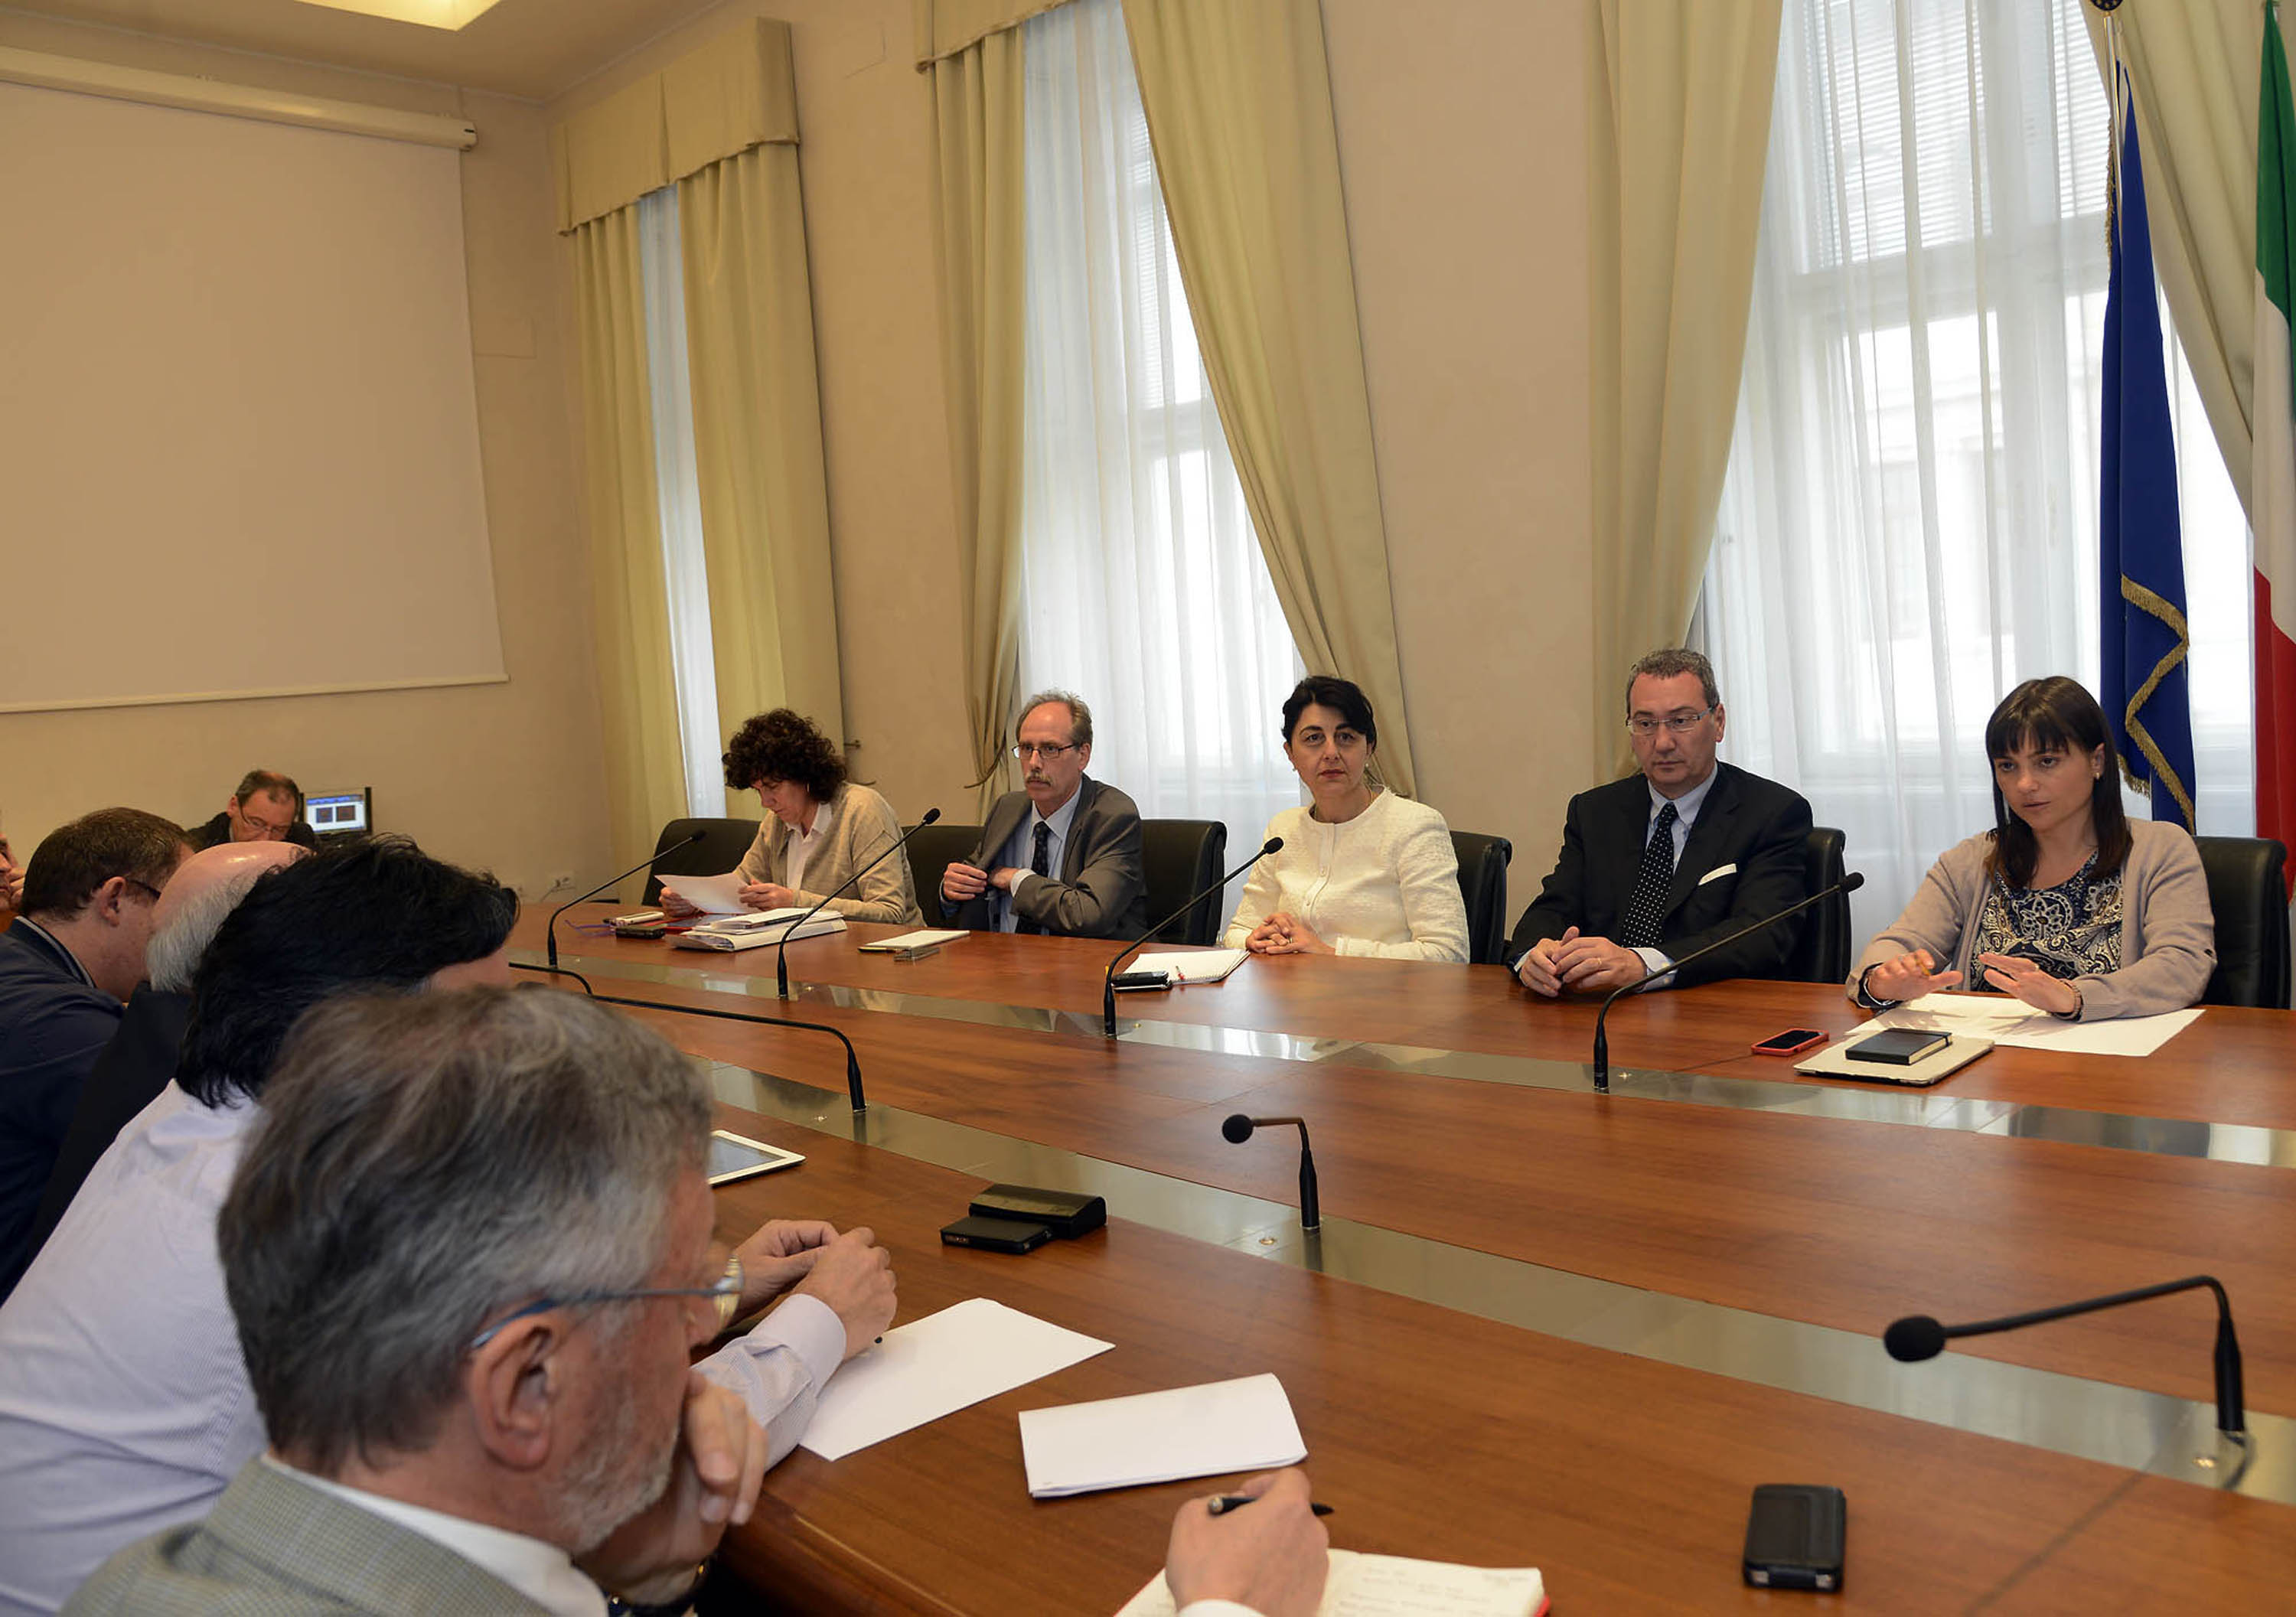 L'incontro tra Debora Serracchiani (Presidente Friuli Venezia Giulia), gli assessori della Giunta del FVG e i rappresentanti dei sindacati regionali CGIL, CISL, UIL e UGL. (Trieste 17/05/13)